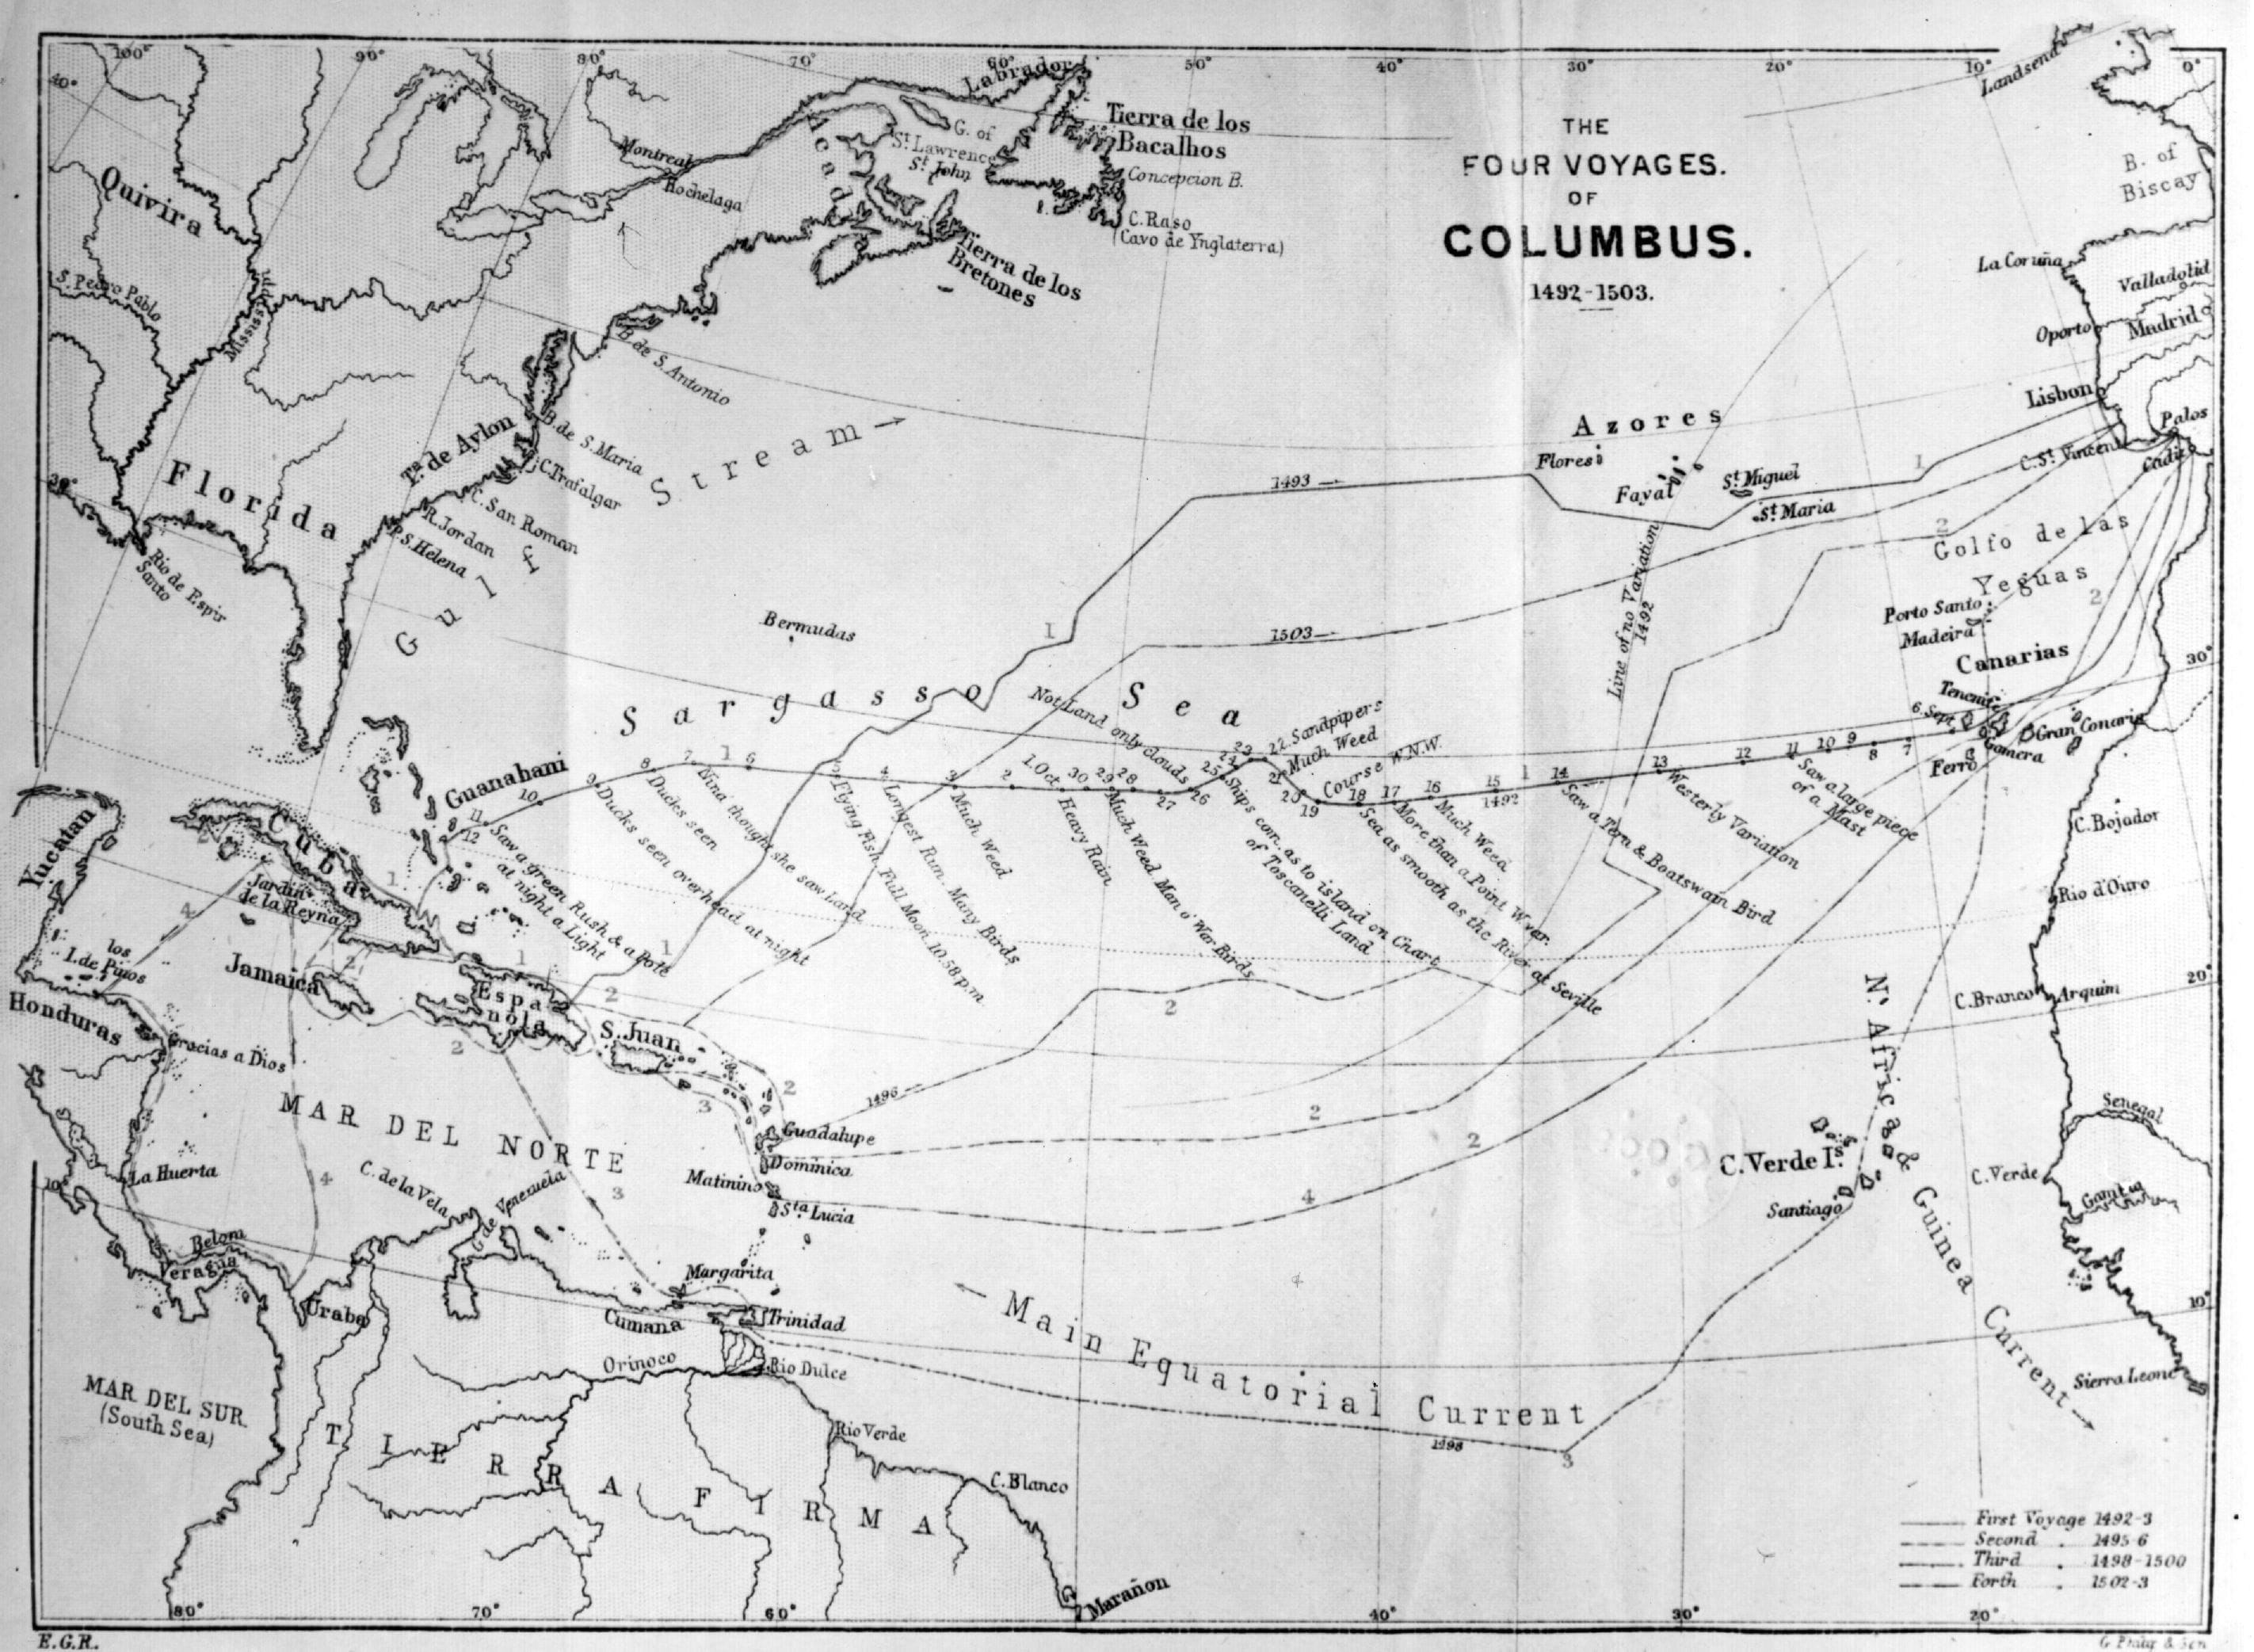 Una mappa dei quattro viaggi del navigatore italiano Cristoforo Colombo, tratta dall'opera "I grandi esploratori del mondo", di J Scott Keltic, del 1889